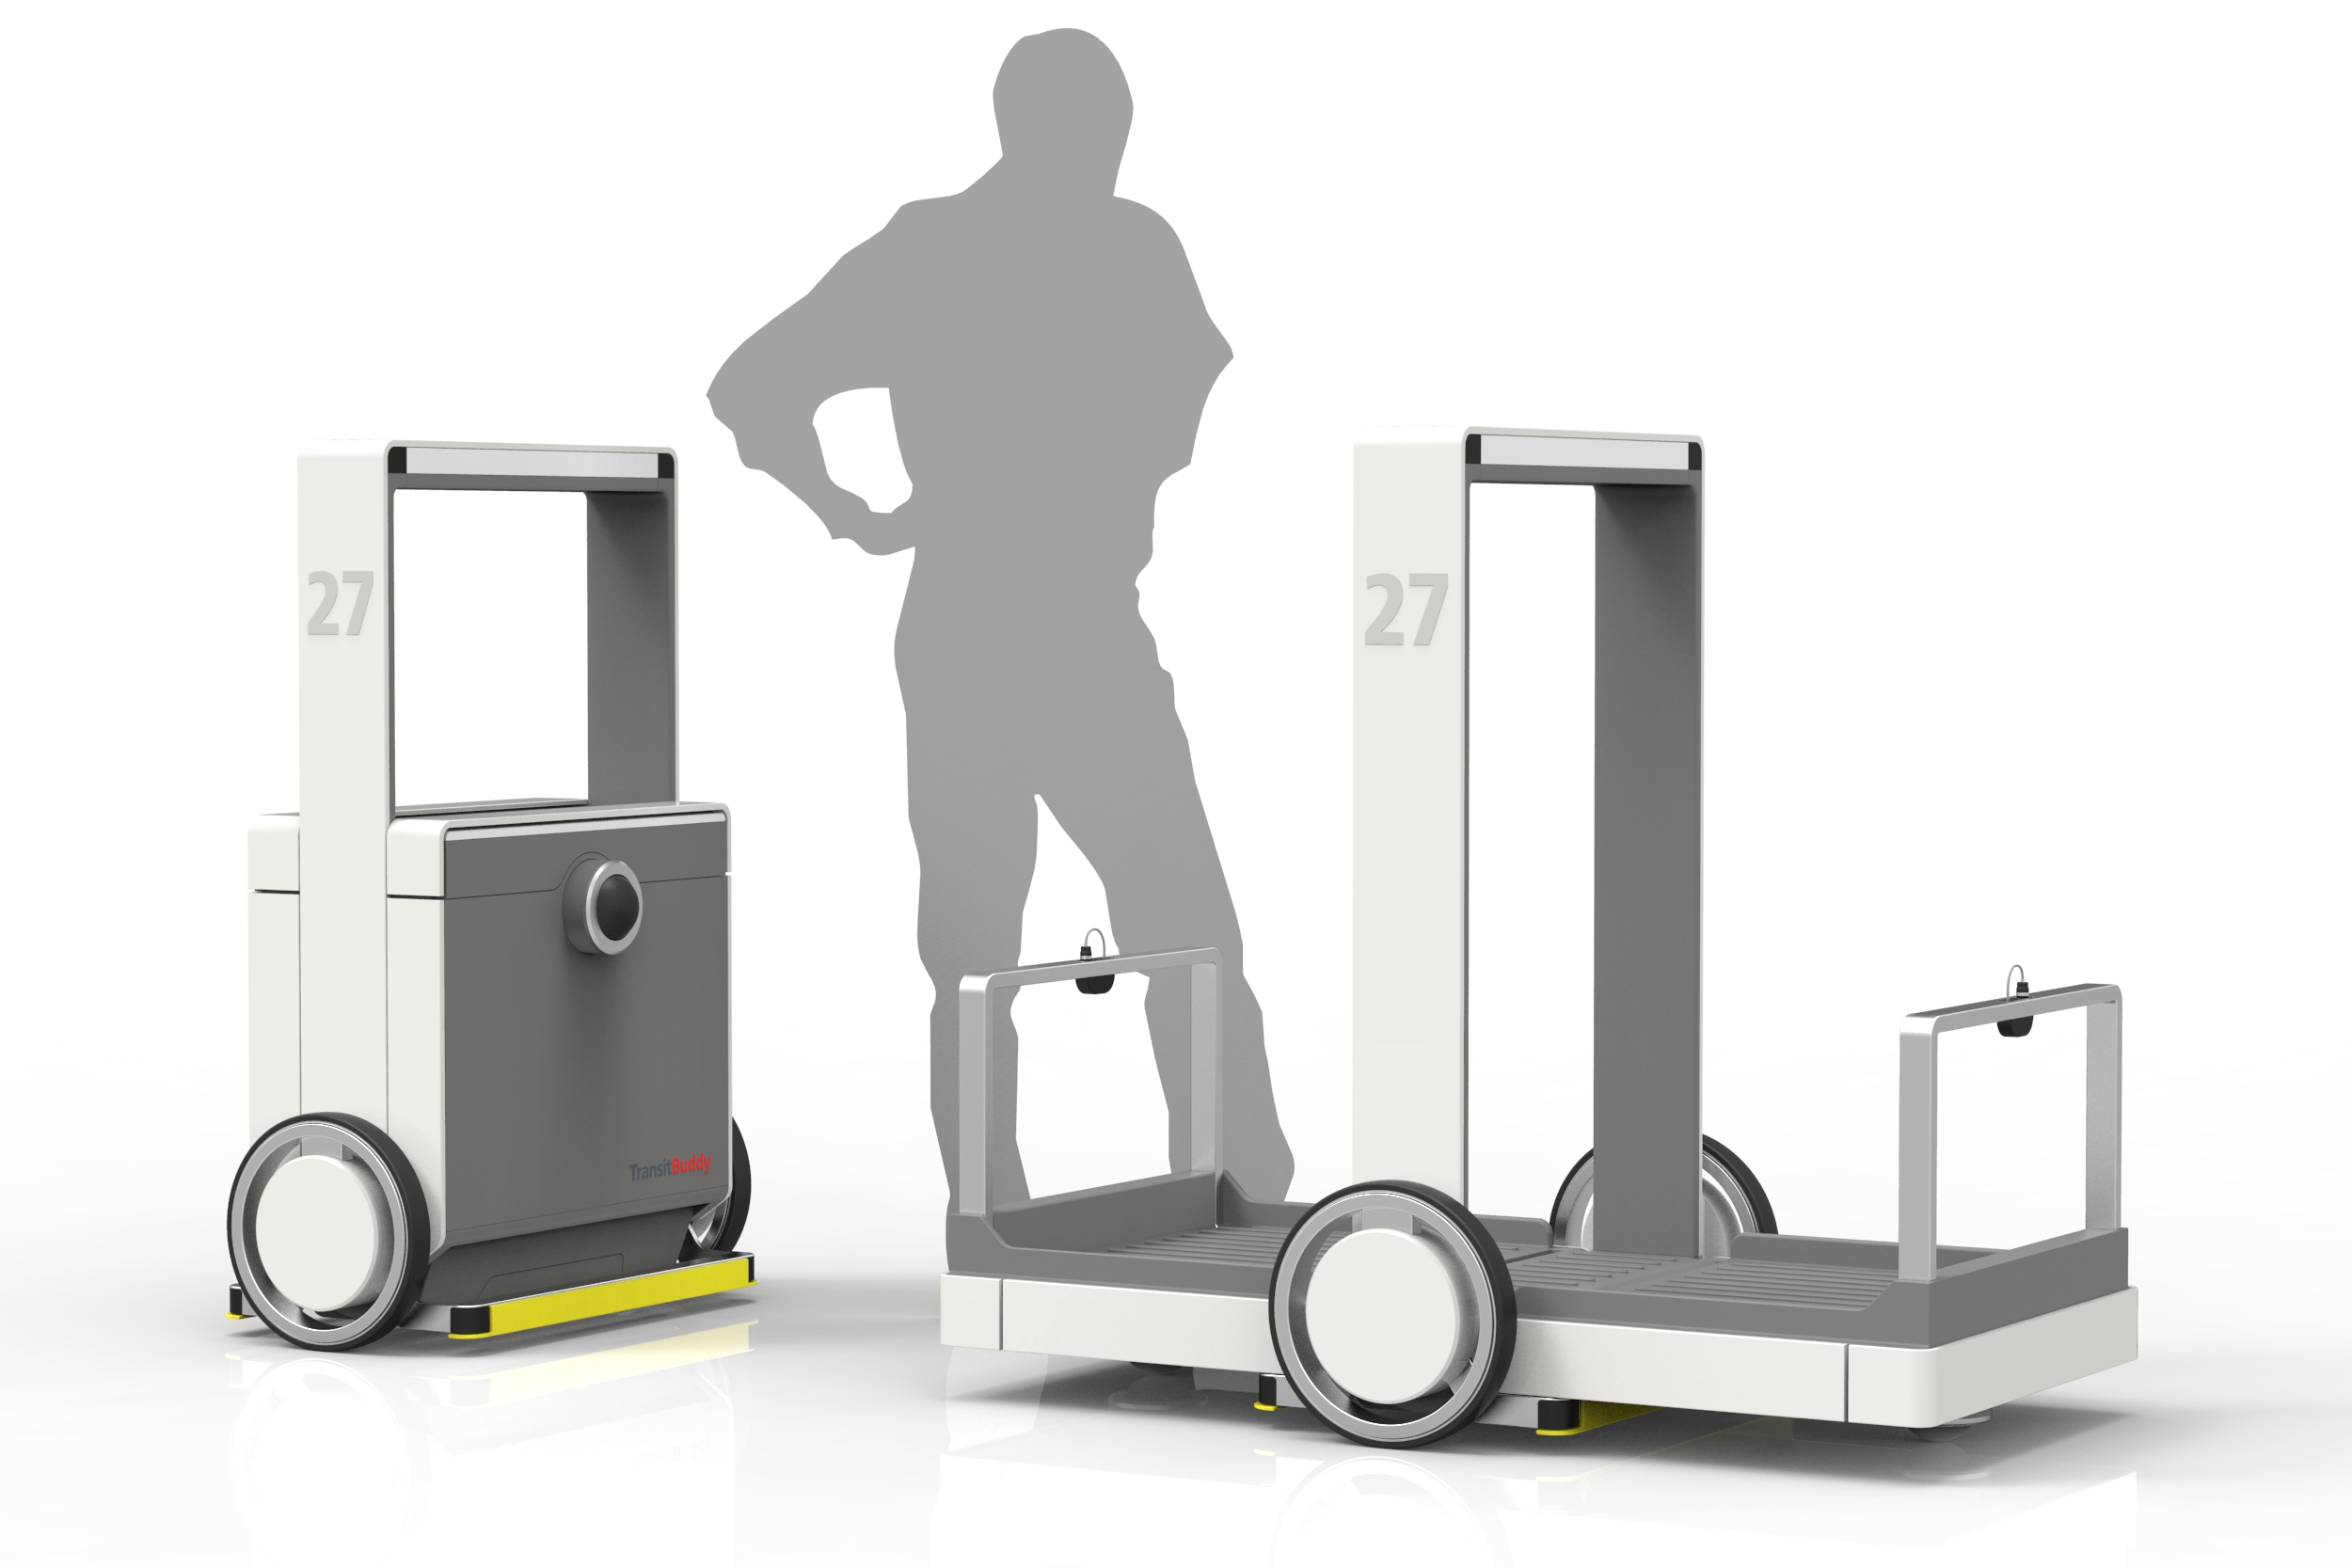 graue, menschliche Figur zu deren rechten und linken Seite Maschinen stehen auf denen man Gegenstände transportieren kann.